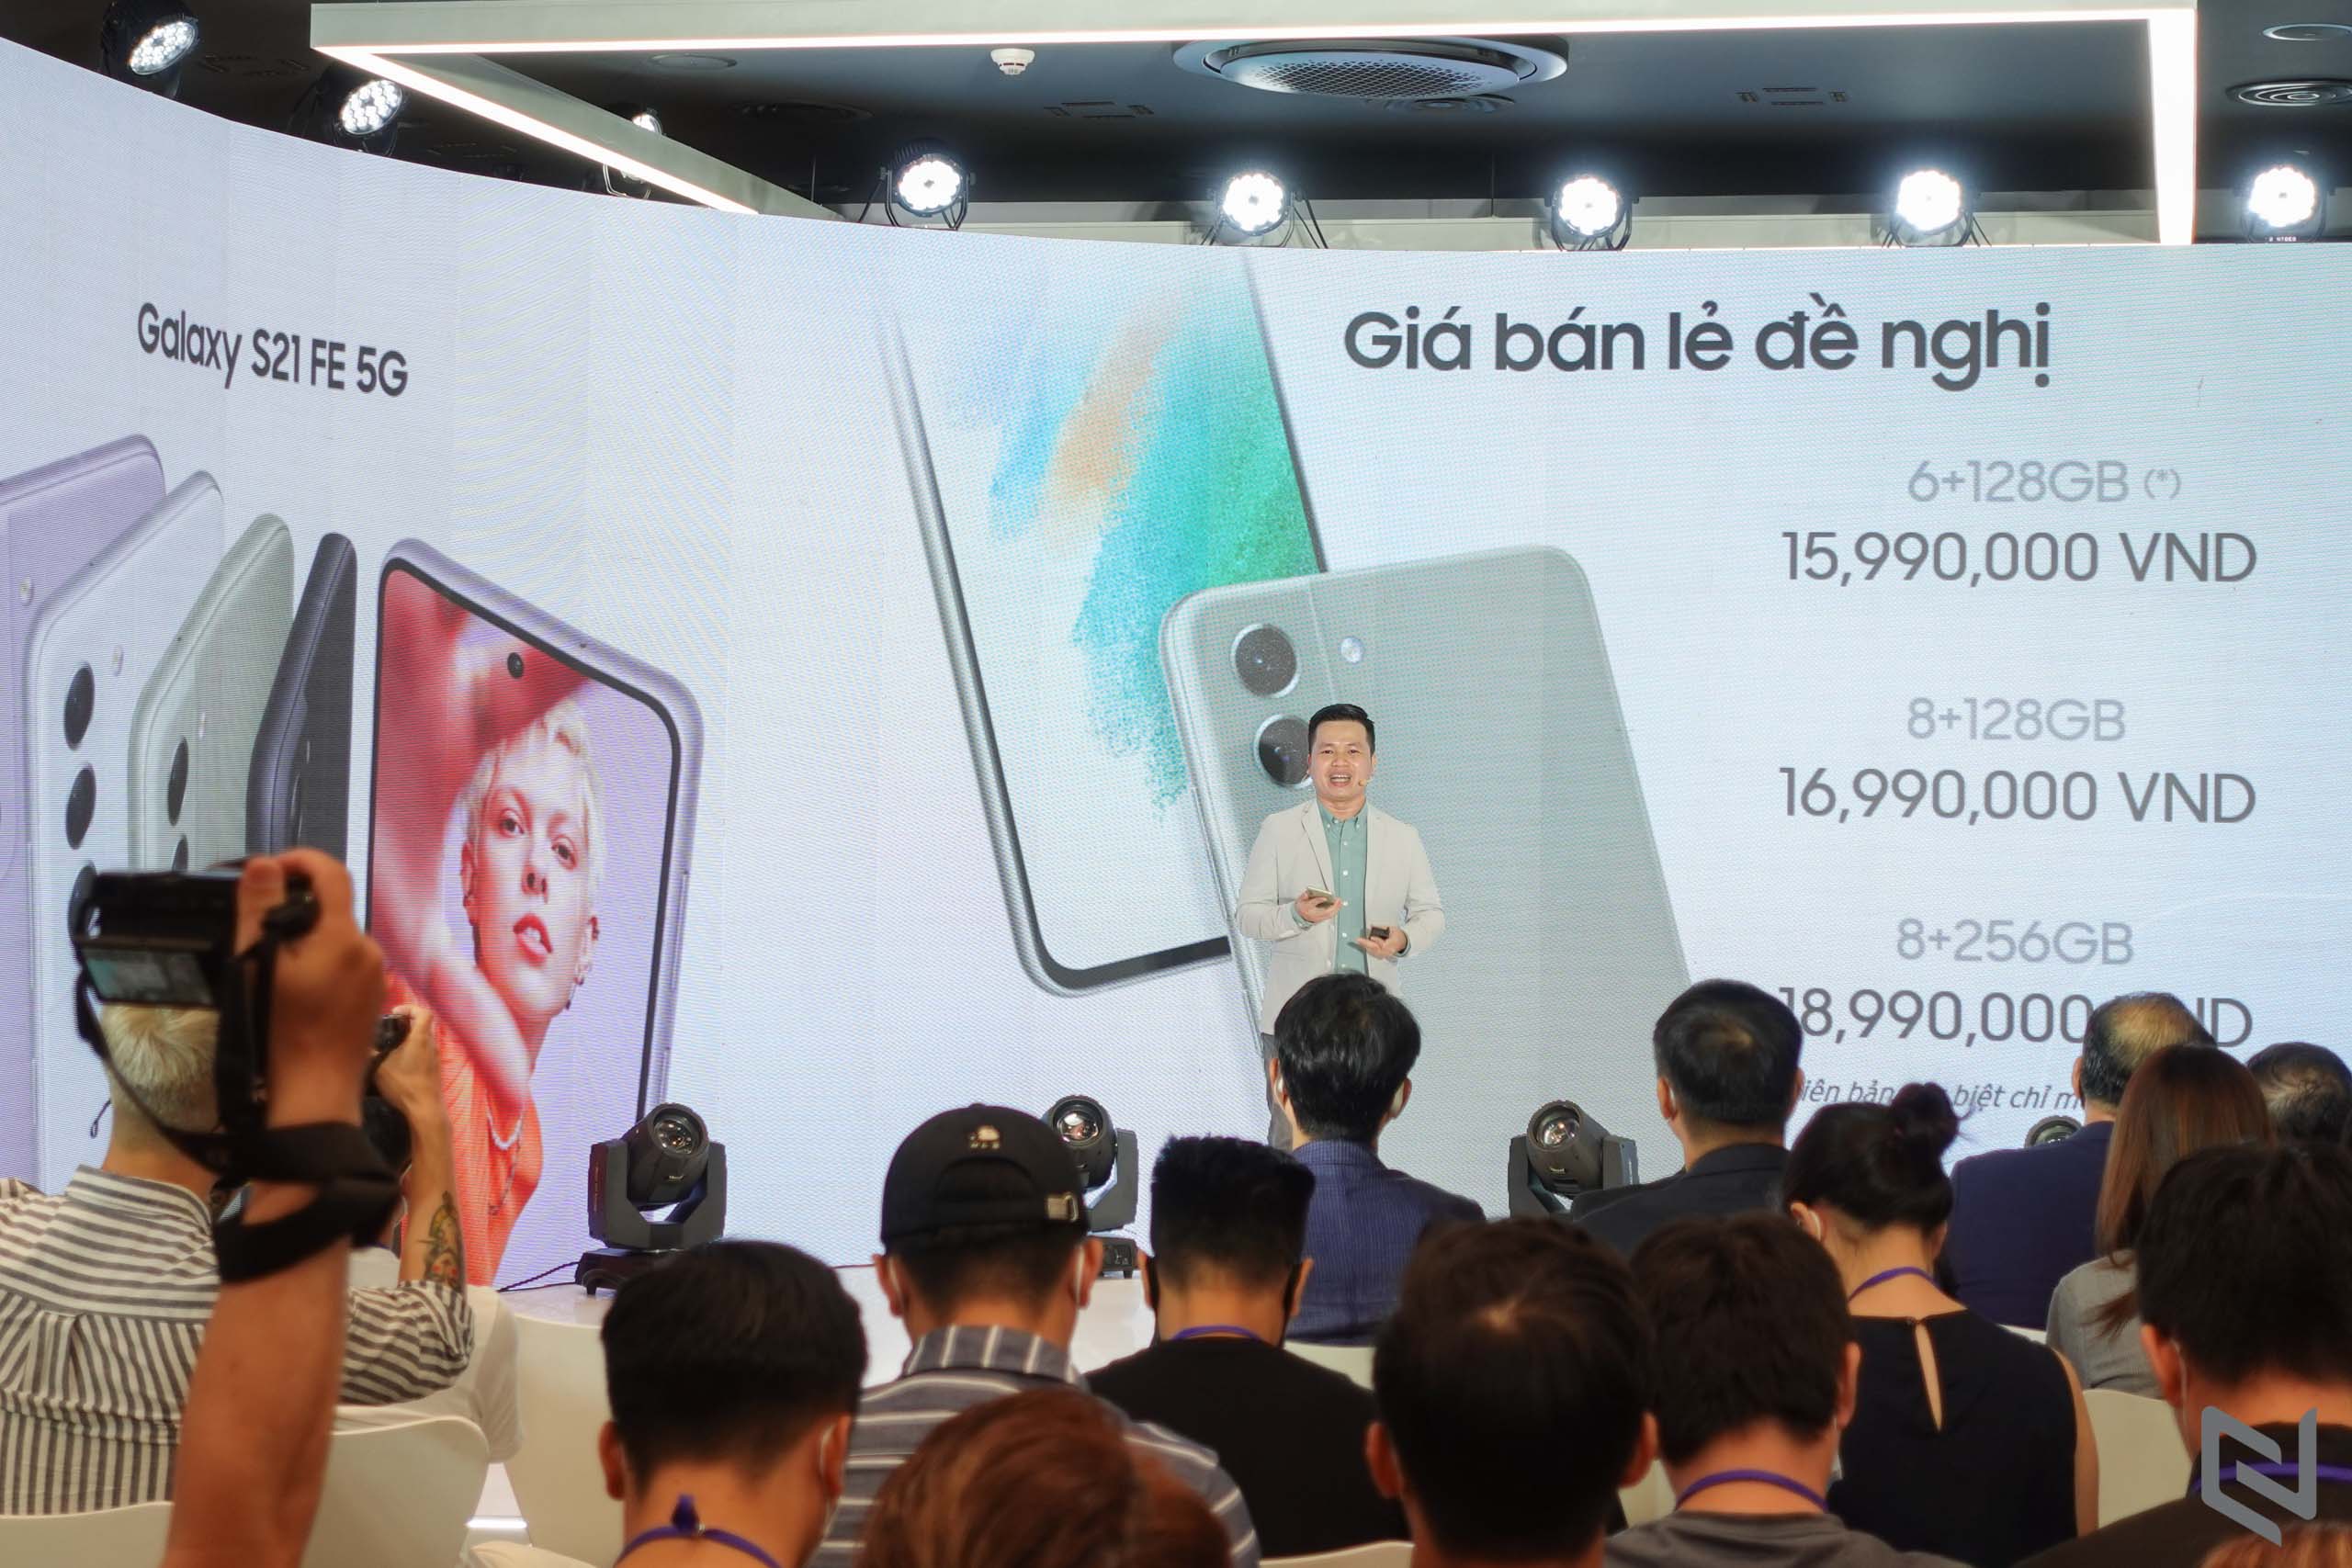 Galaxy S21 FE 5G ra mắt: Chiếc smartphone hàng đầu được thiết kế bừng khí chất cho fan hâm hộ